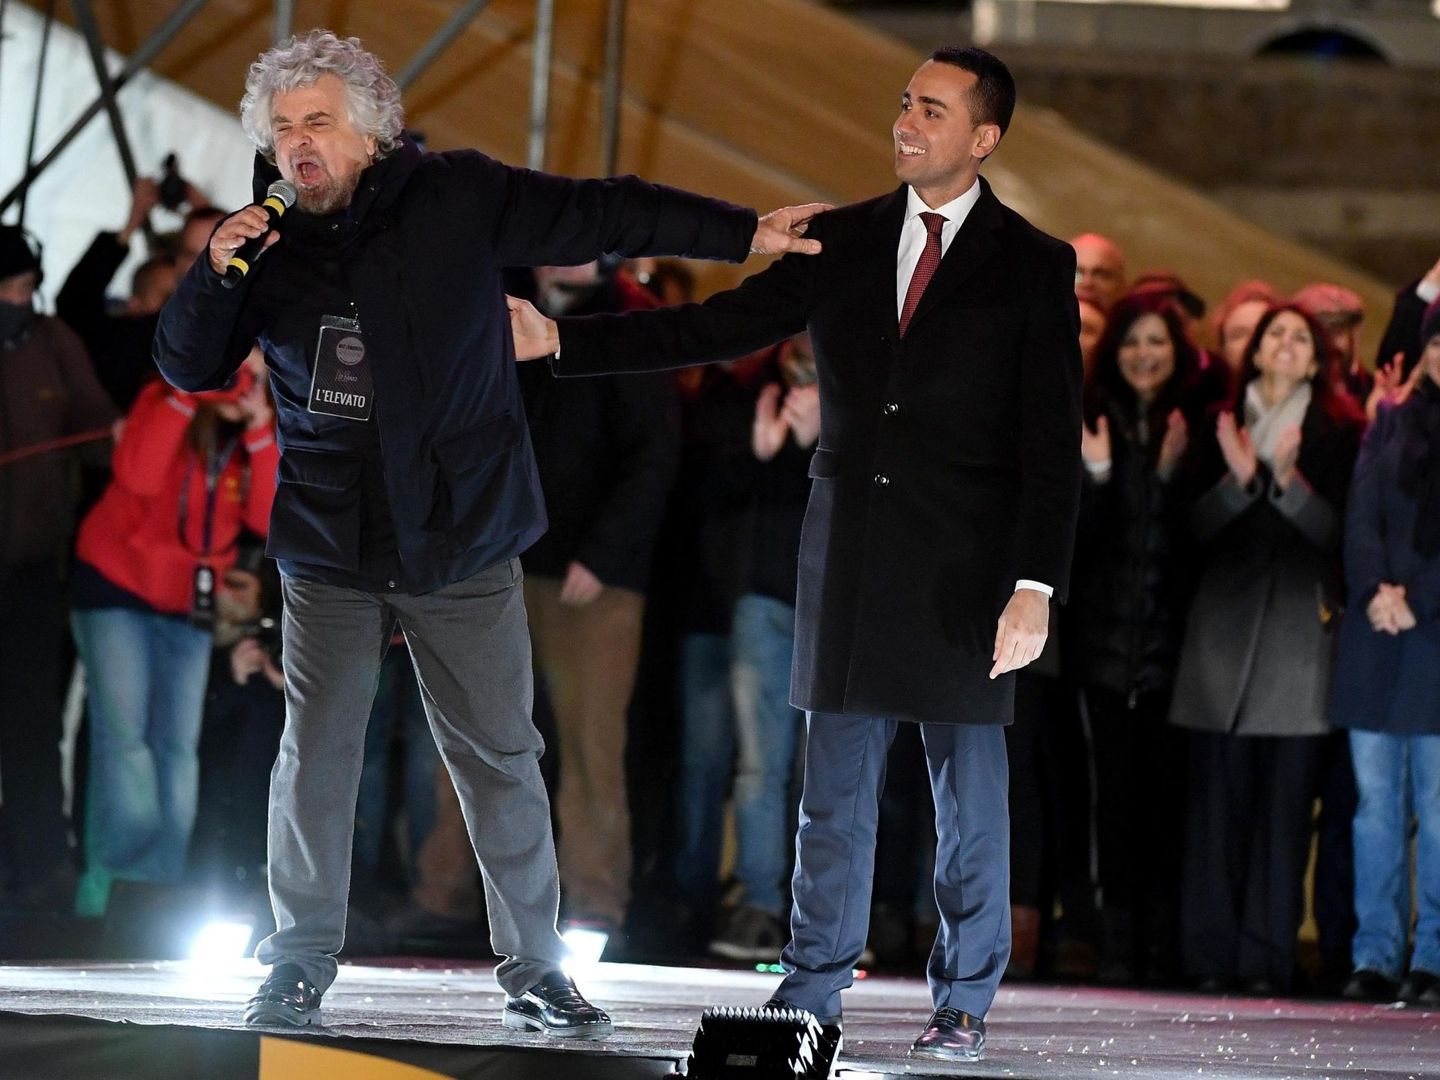 El fundador del M5S, Beppe Grillo, y Luigi Di Maio pronuncian un discurso durante un acto electoral celebrado en Roma. (EFE)